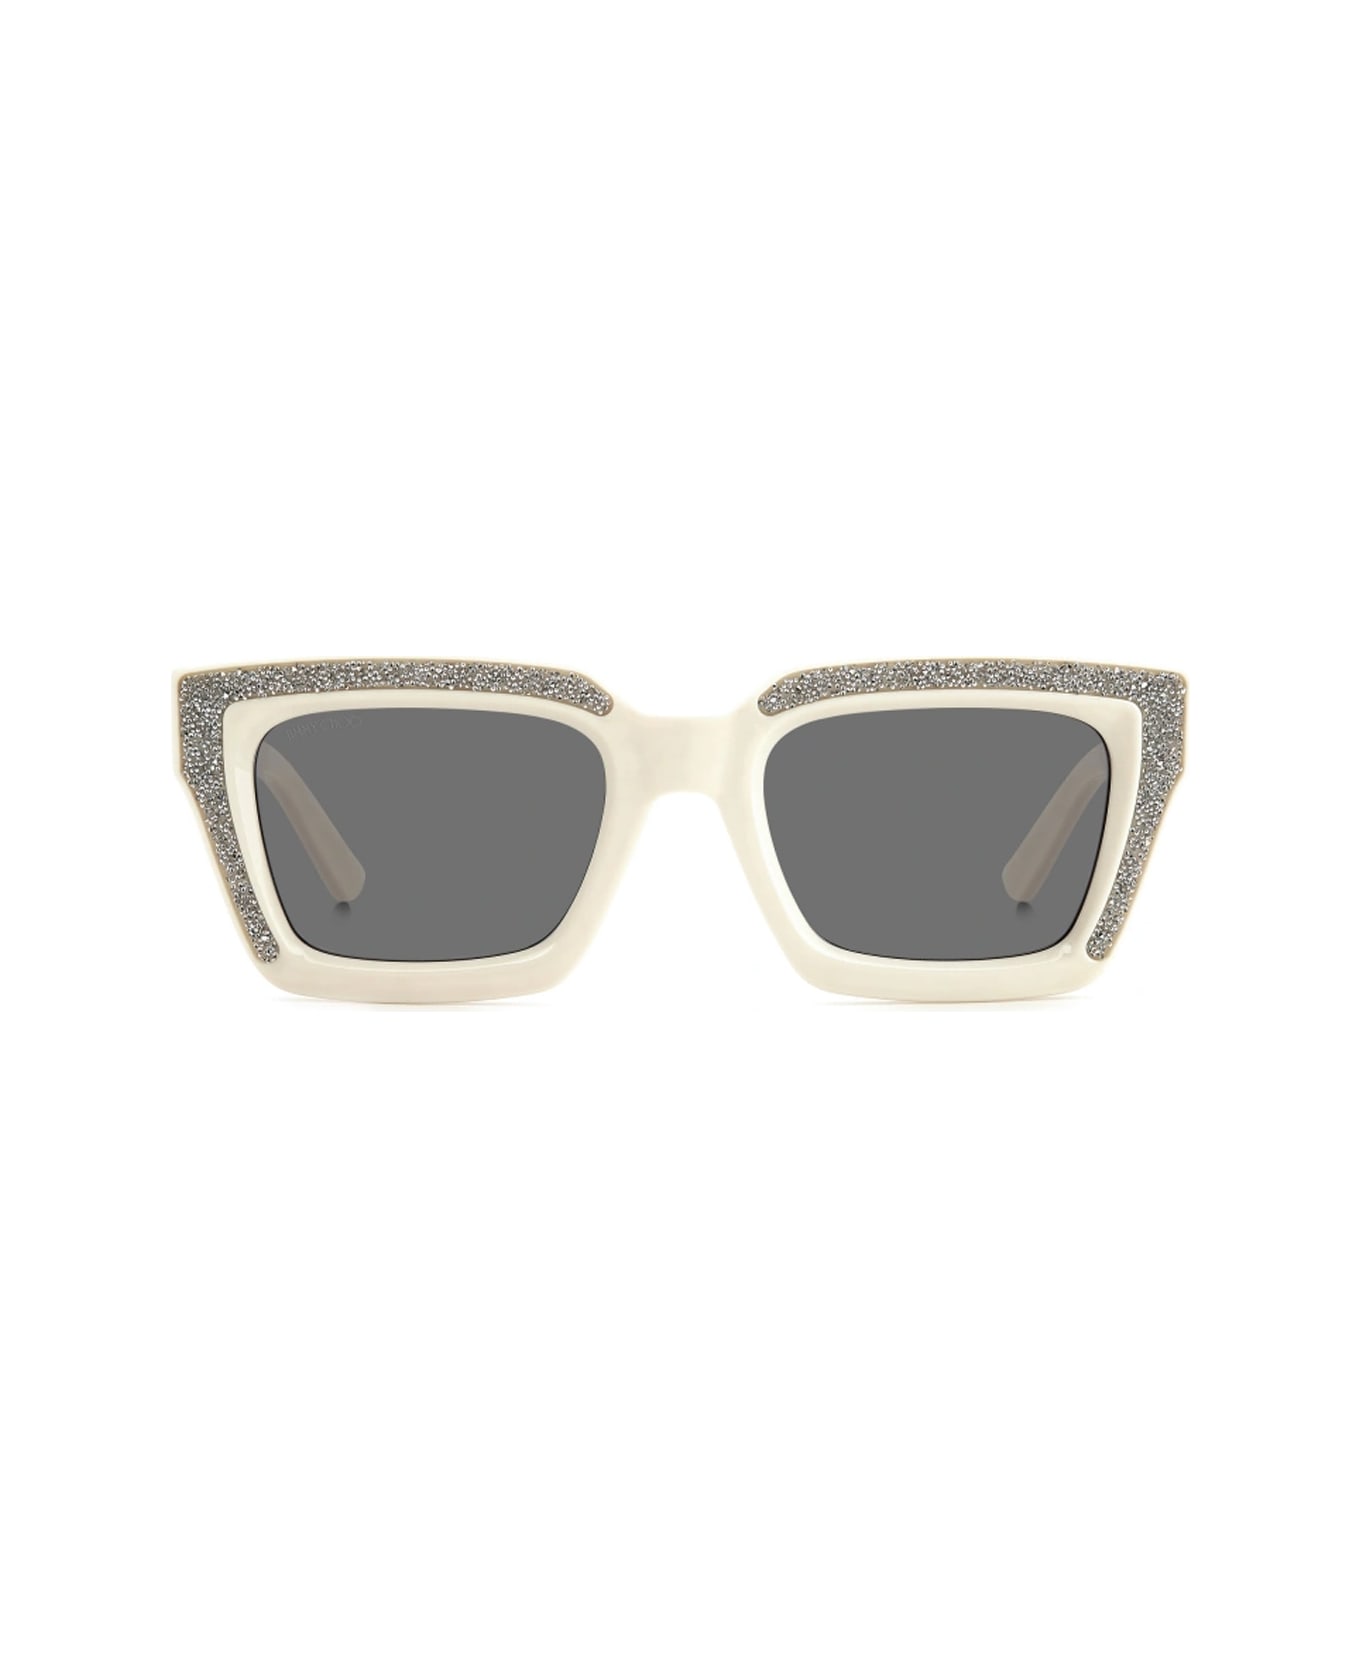 Jimmy Choo Eyewear Megs/s Szj/2k Sunglasses - Avorio